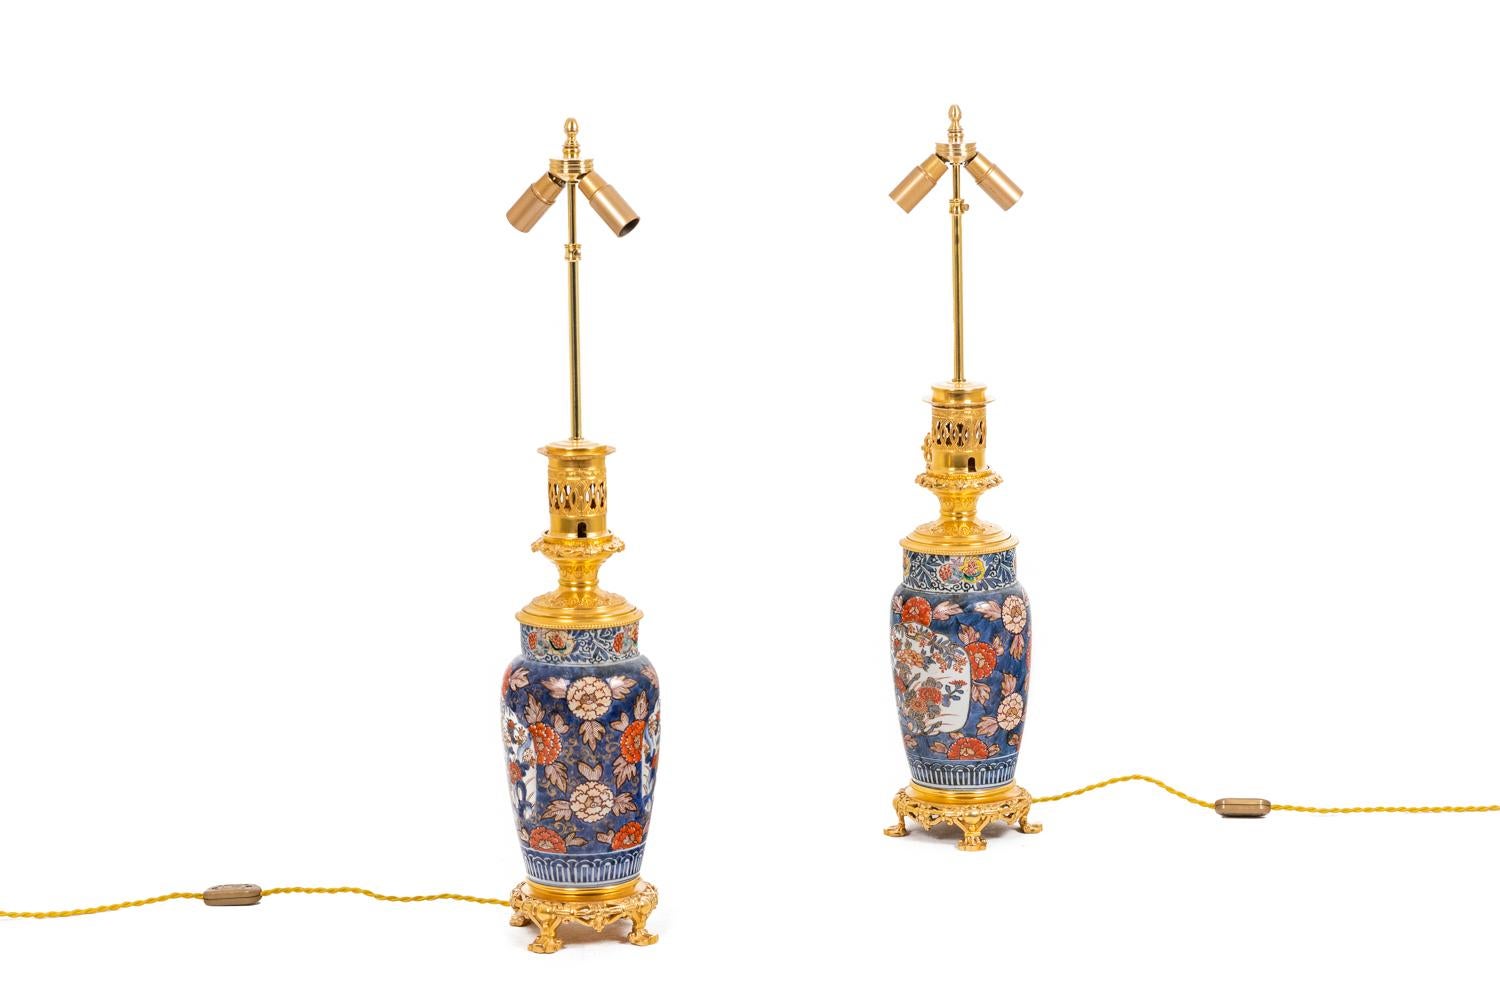 Paar Lampen aus Imari-Porzellan mit Blumendekor, verziert mit dekorativer Bronze, eiförmig mit Hals. Rahmen aus gemeißelter und vergoldeter Bronze auf einem runden Vierfuß. Lampenkörper mit blauem Hintergrund, verziert mit roten Blumen und blauem